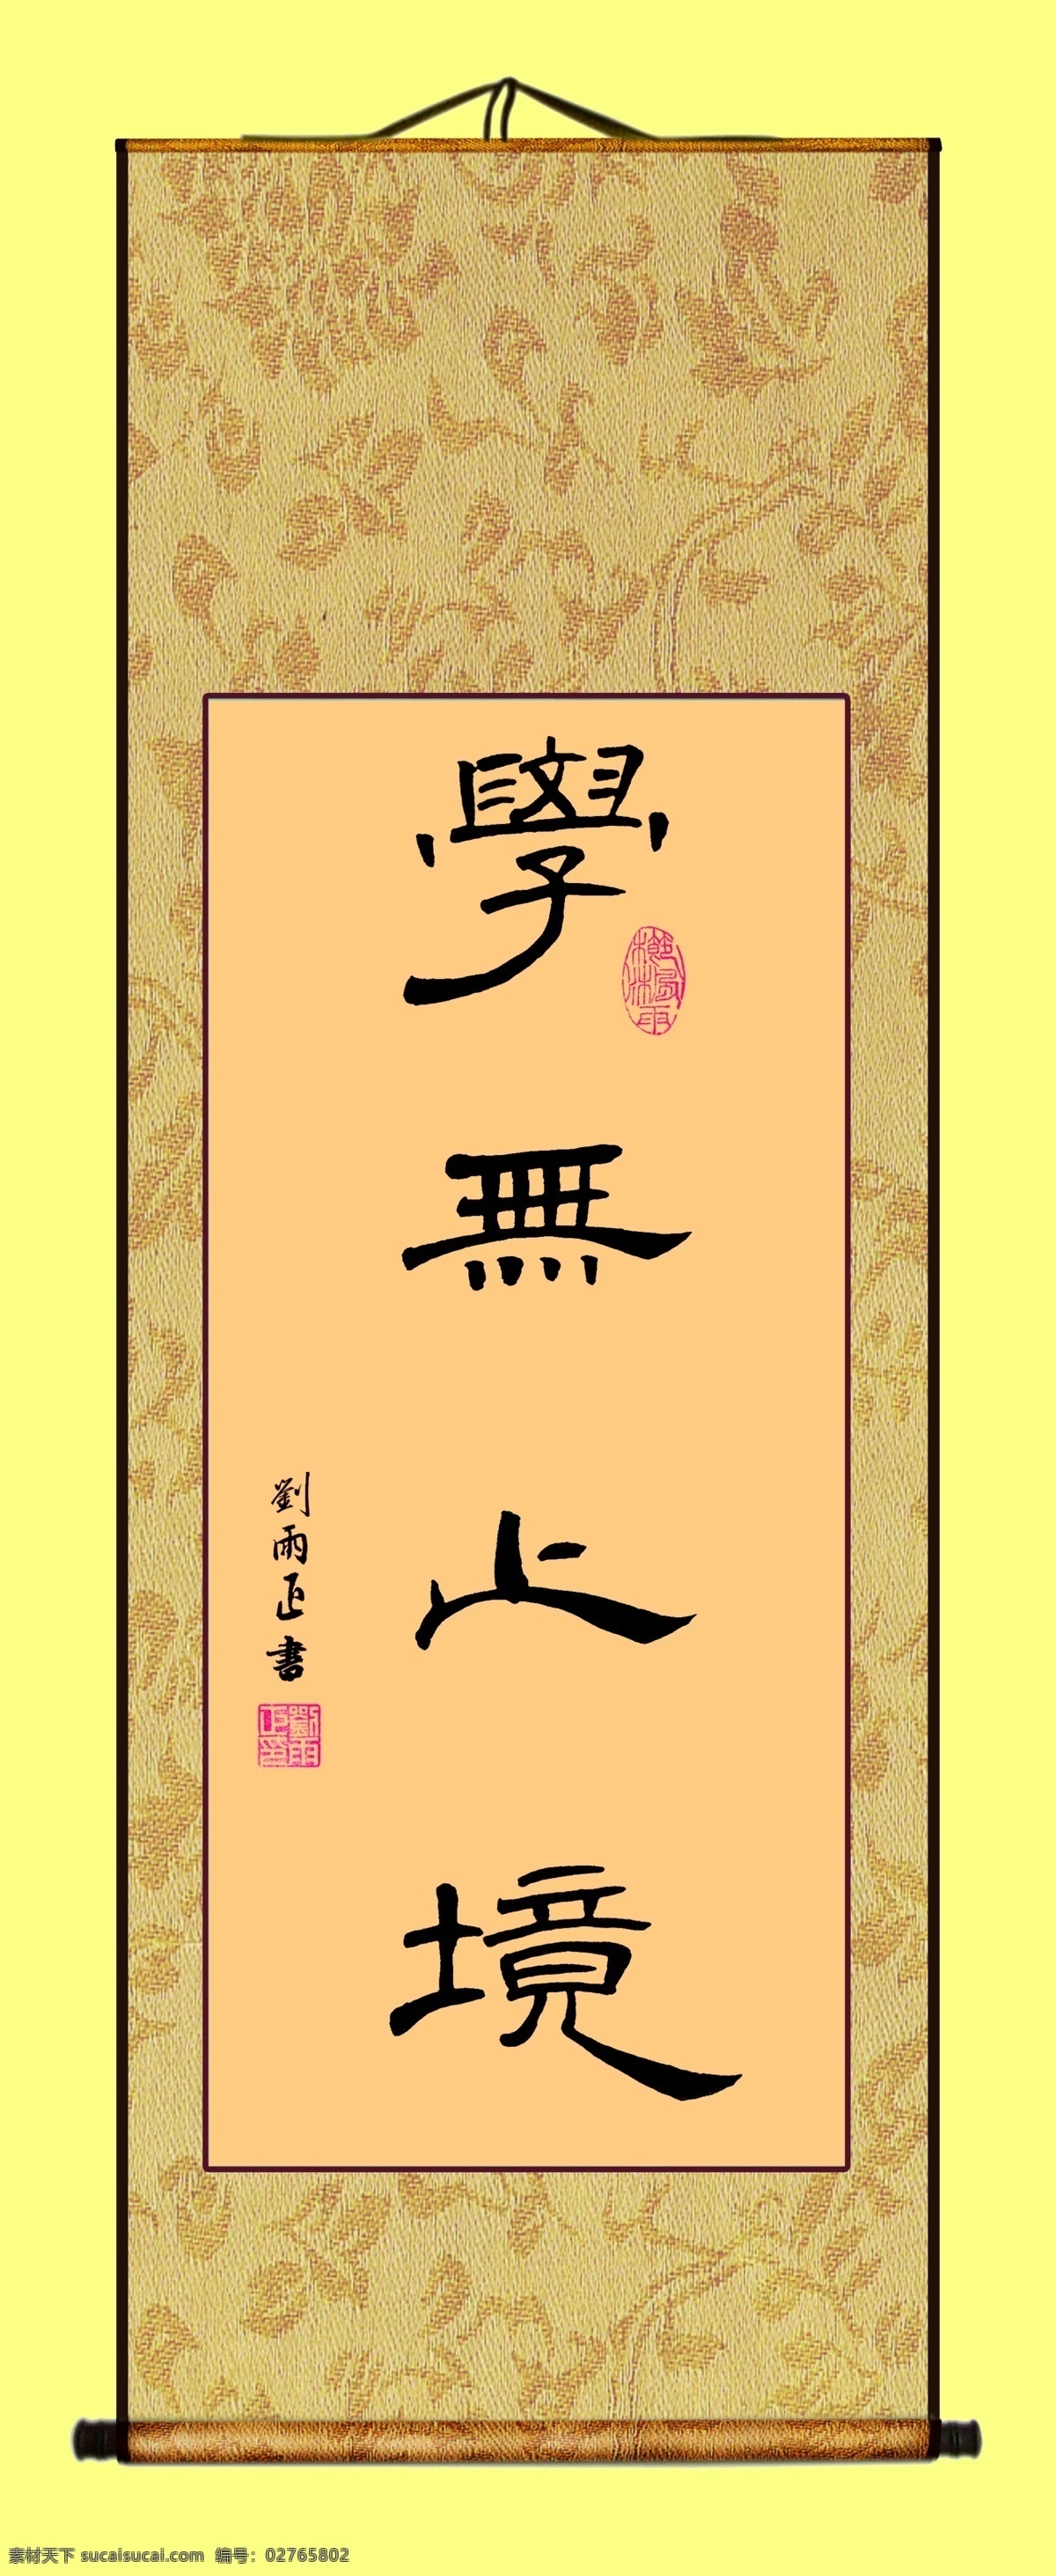 刘 雨 正 励志 书法作品 学无止境 书画装裱 书法条幅 其他模版 广告设计模板 源文件